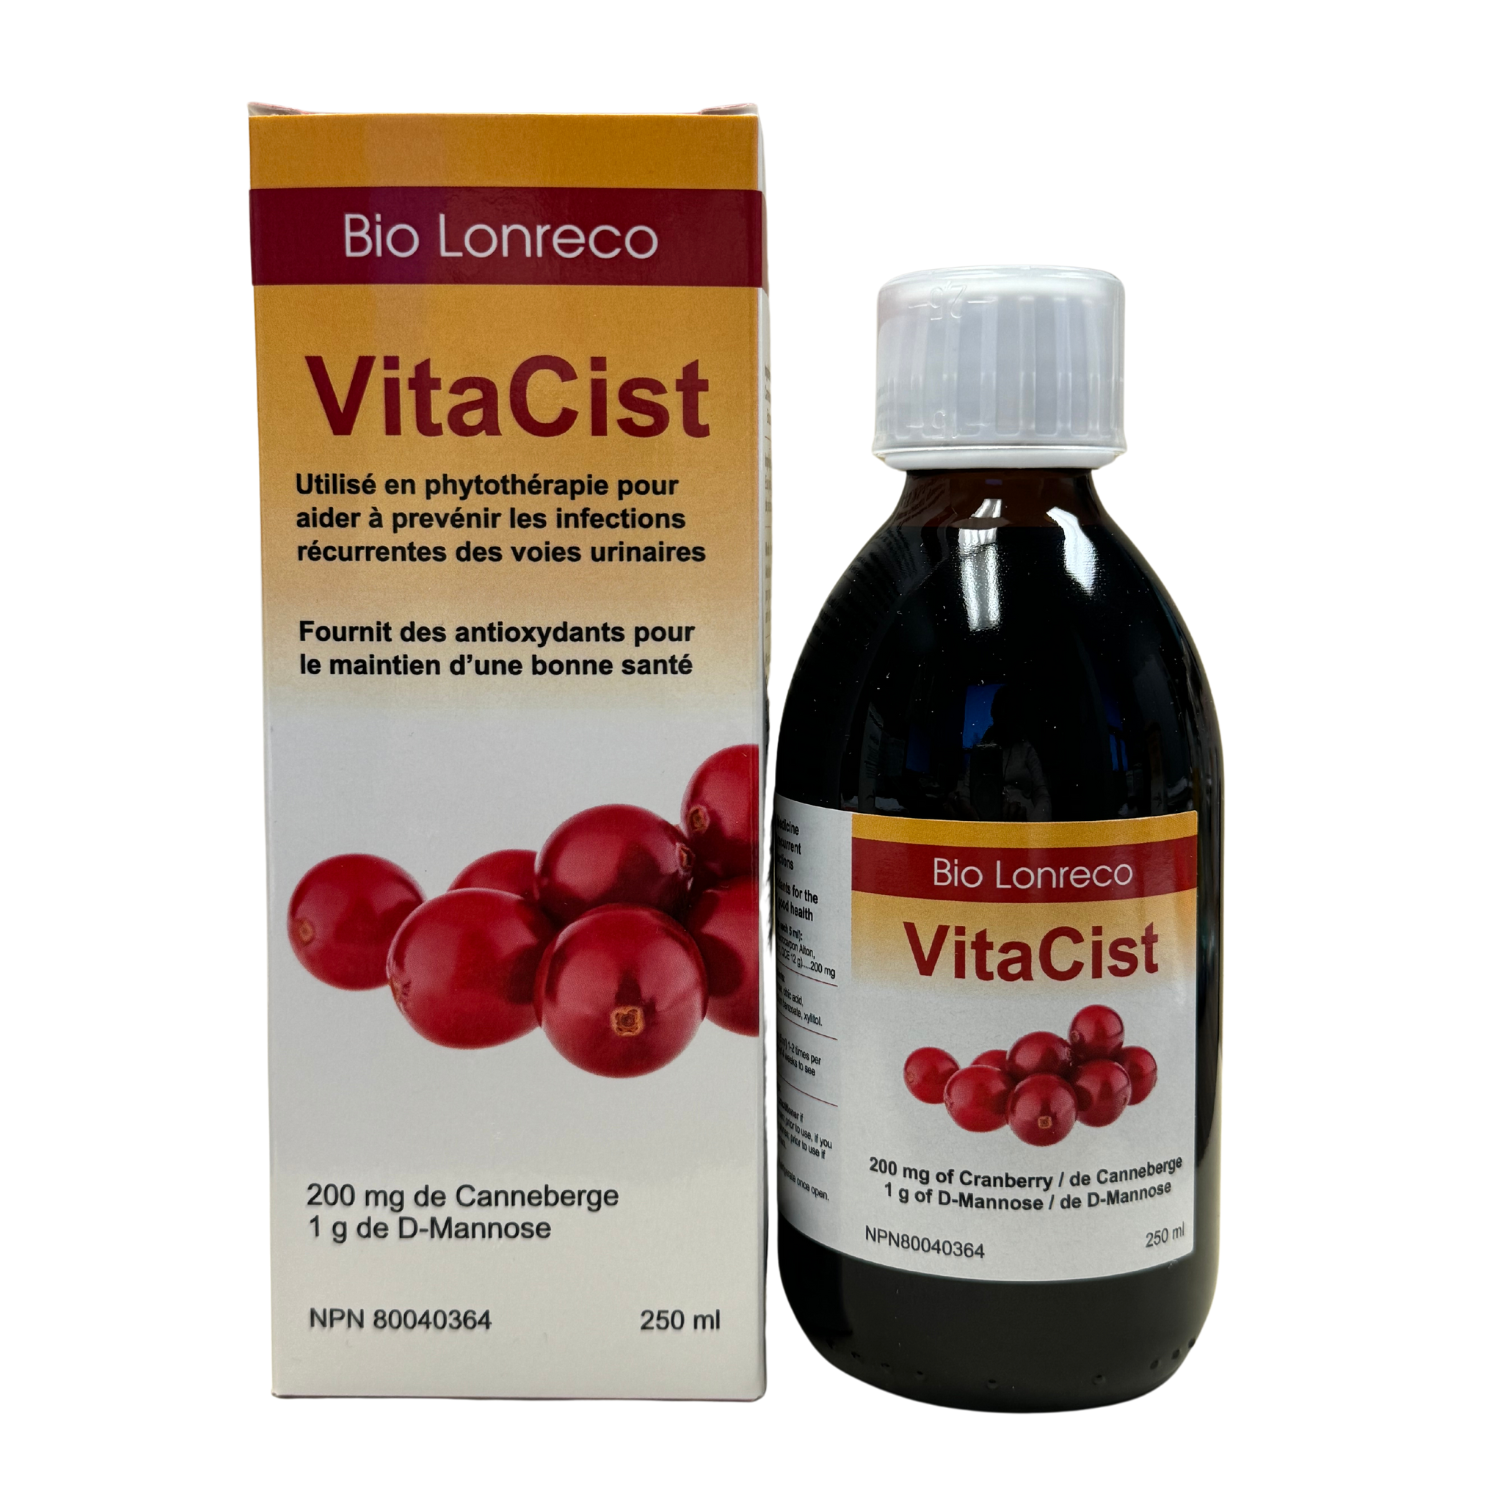 VitaCist